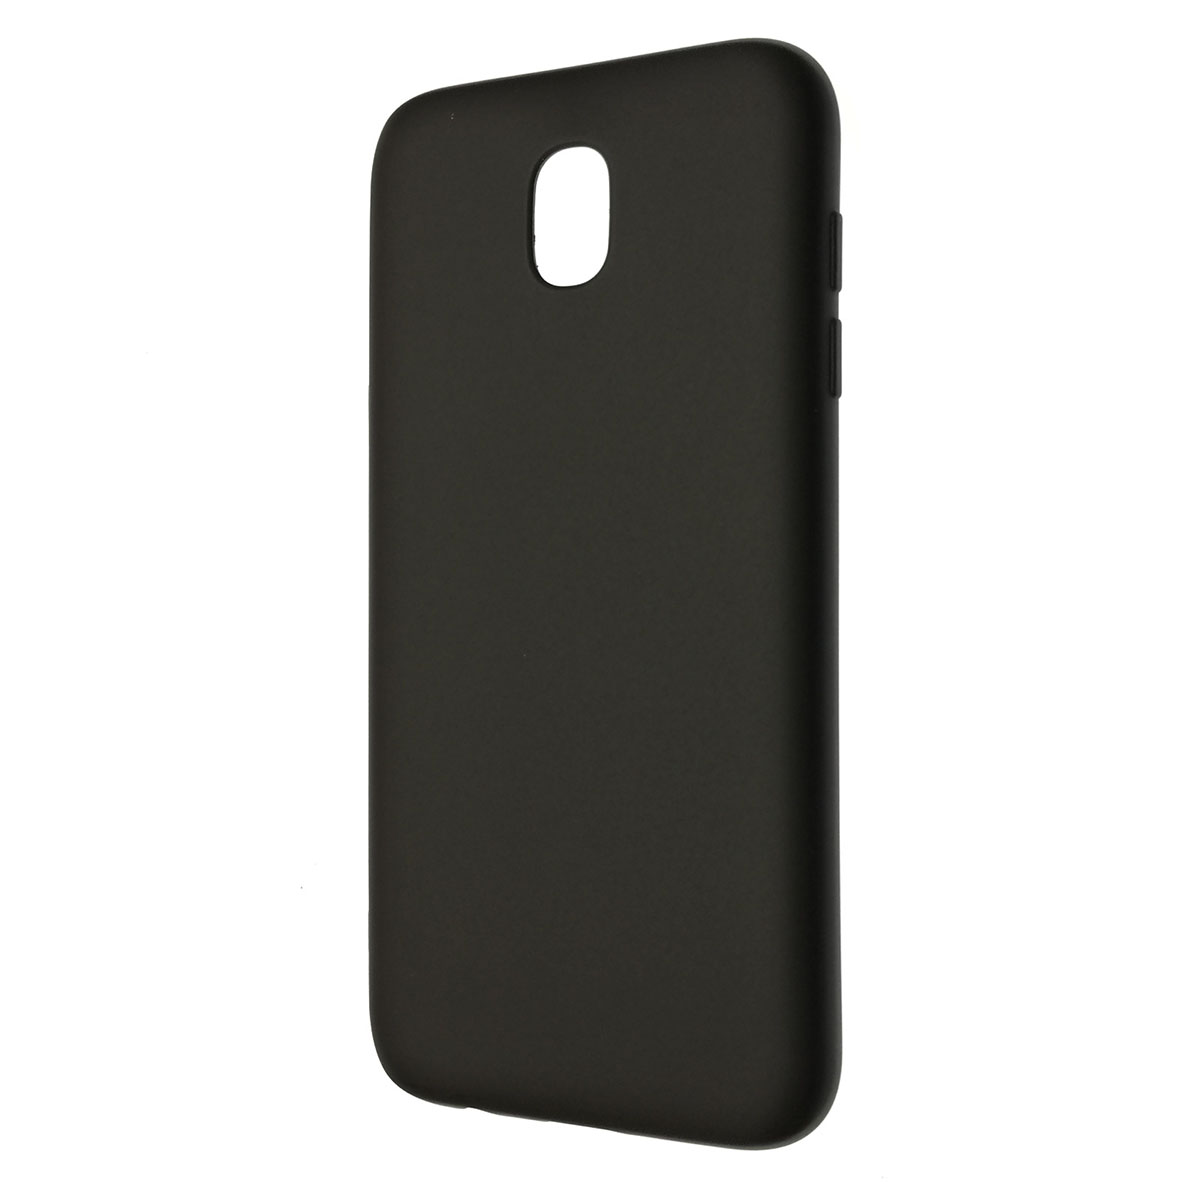 Чехол накладка для SAMSUNG Galaxy J5 2017 (SM-J530), силикон, матовый, цвет черный.